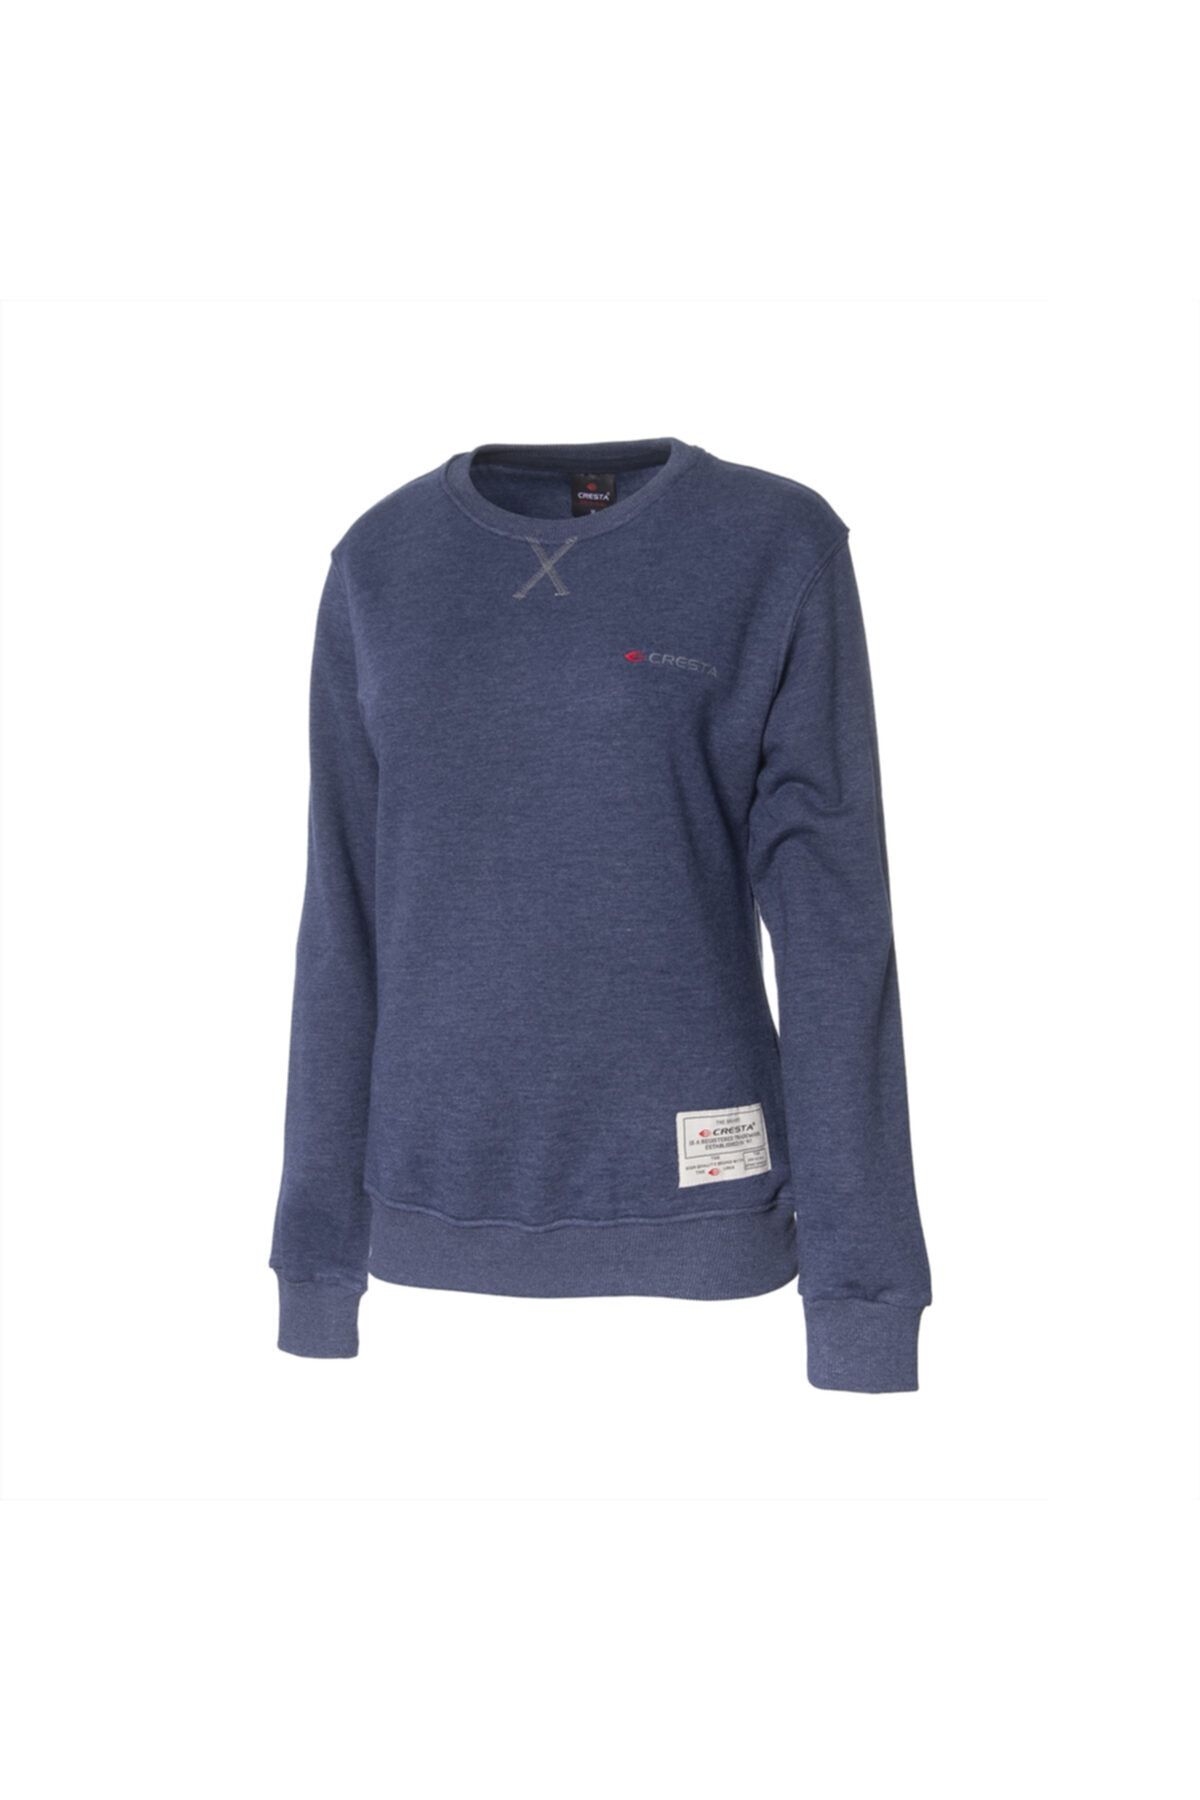 Cresta Kadın Lacivert Outdoor Basic Sweatshirt